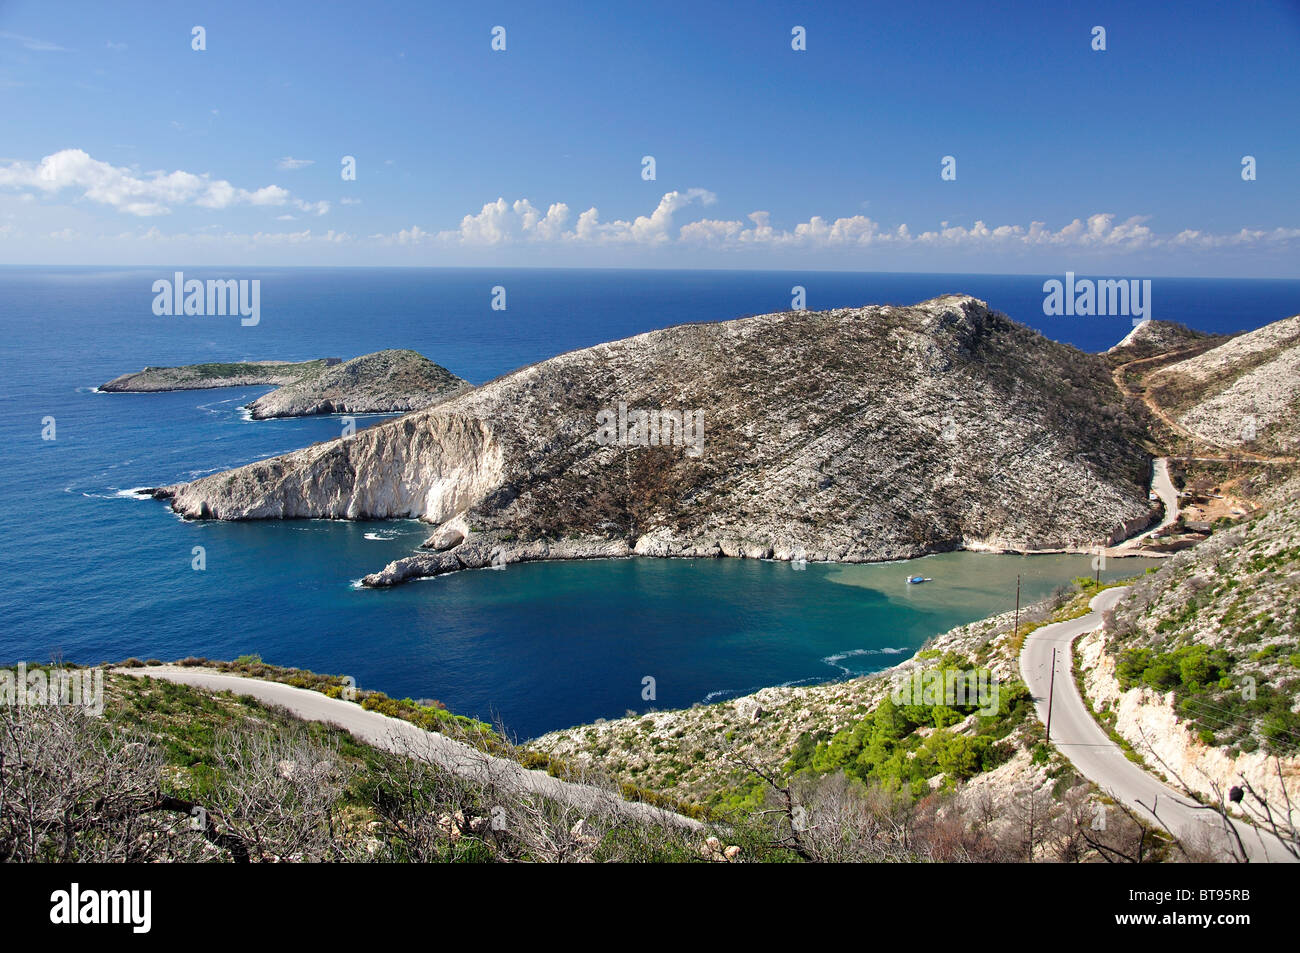 Coastal view, Porto Vromi, Zakynthos (Zante), Ionian Islands, Greece Stock Photo